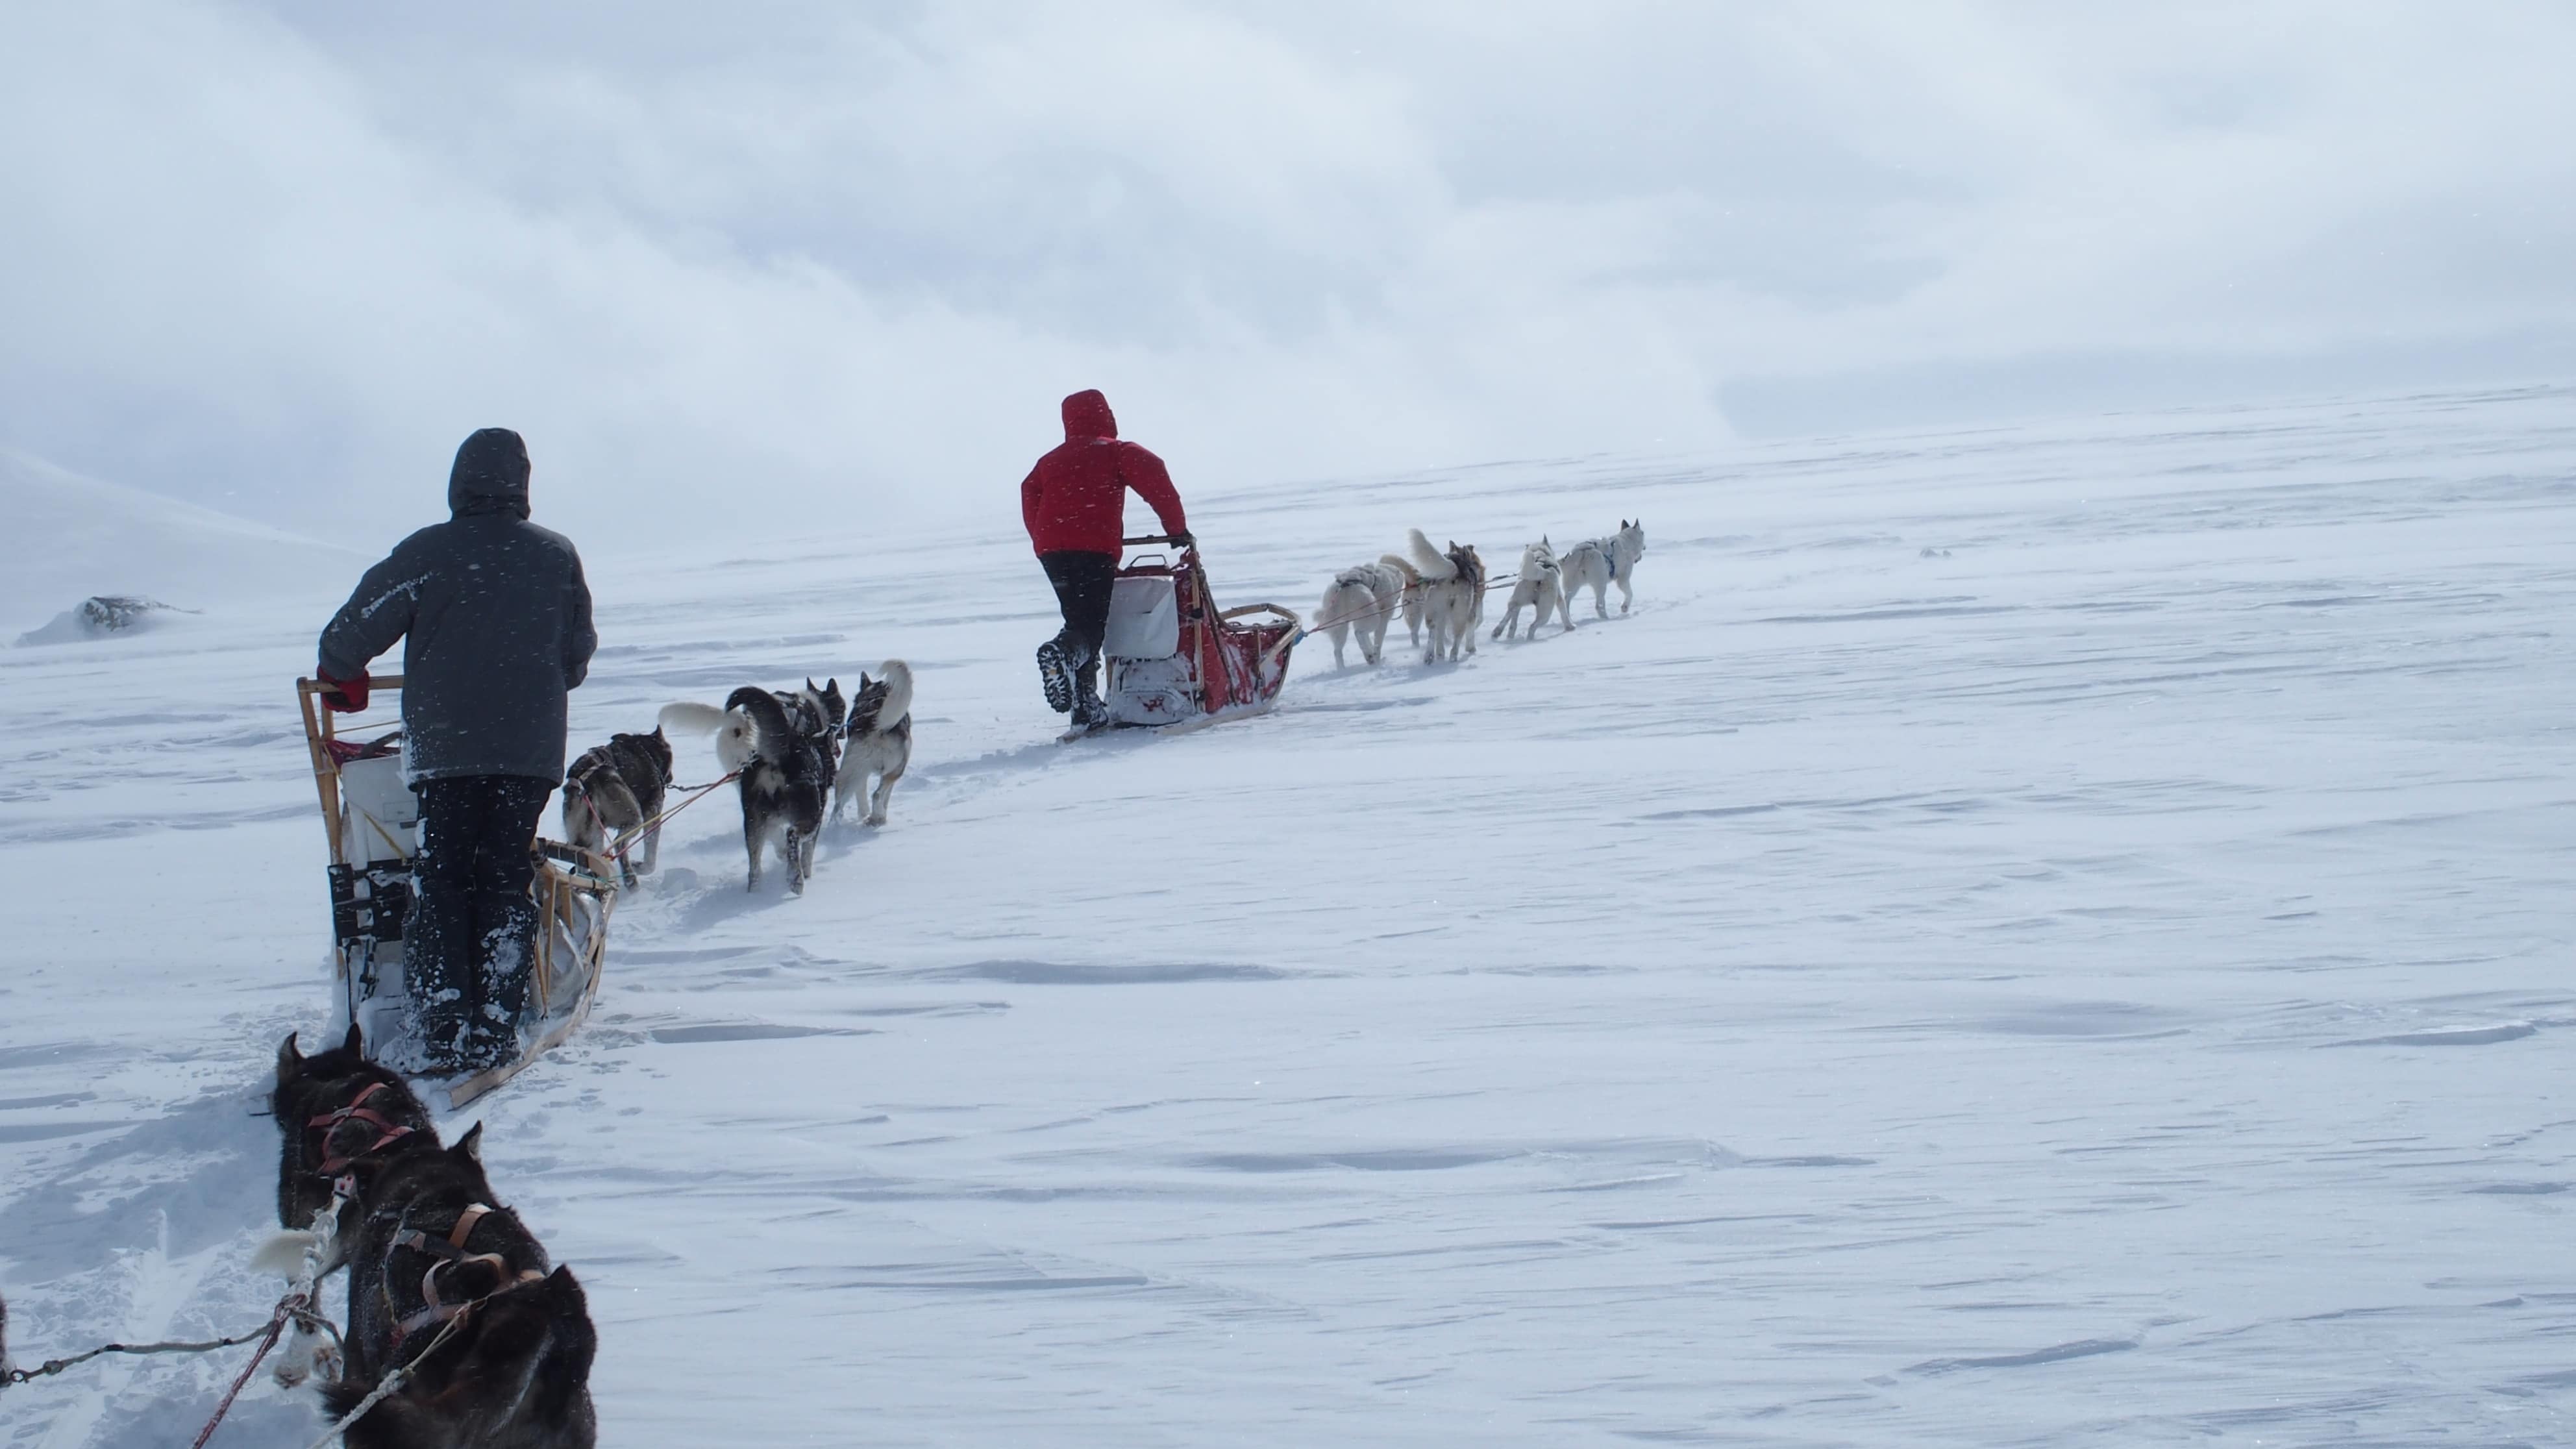 raid chiens de traineau Laponie, raid chiens de traîneau en Laponie suedoise